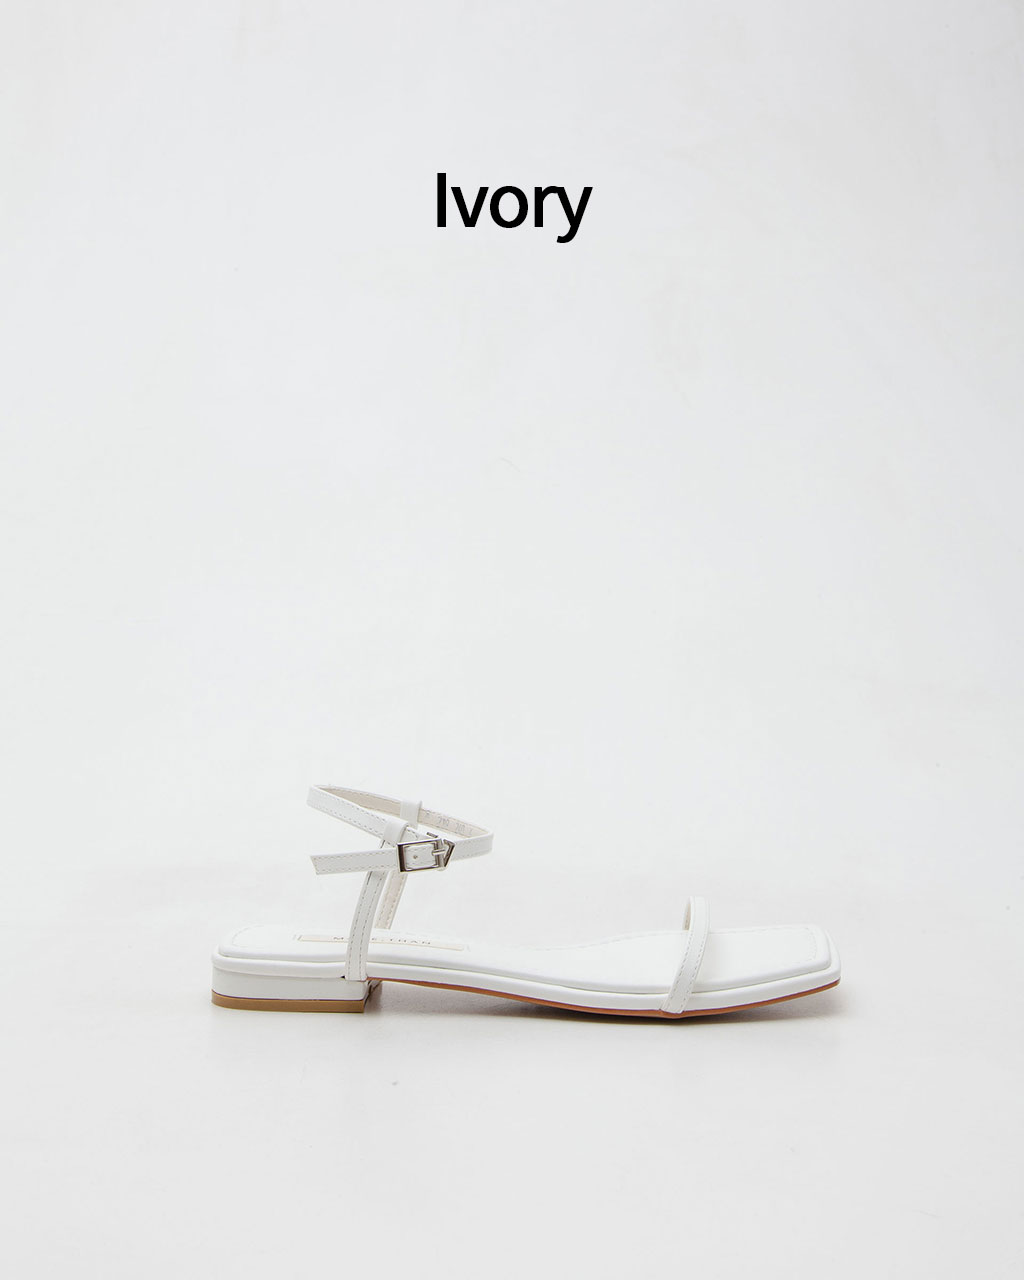 Fame-219 - Ivory(̺)